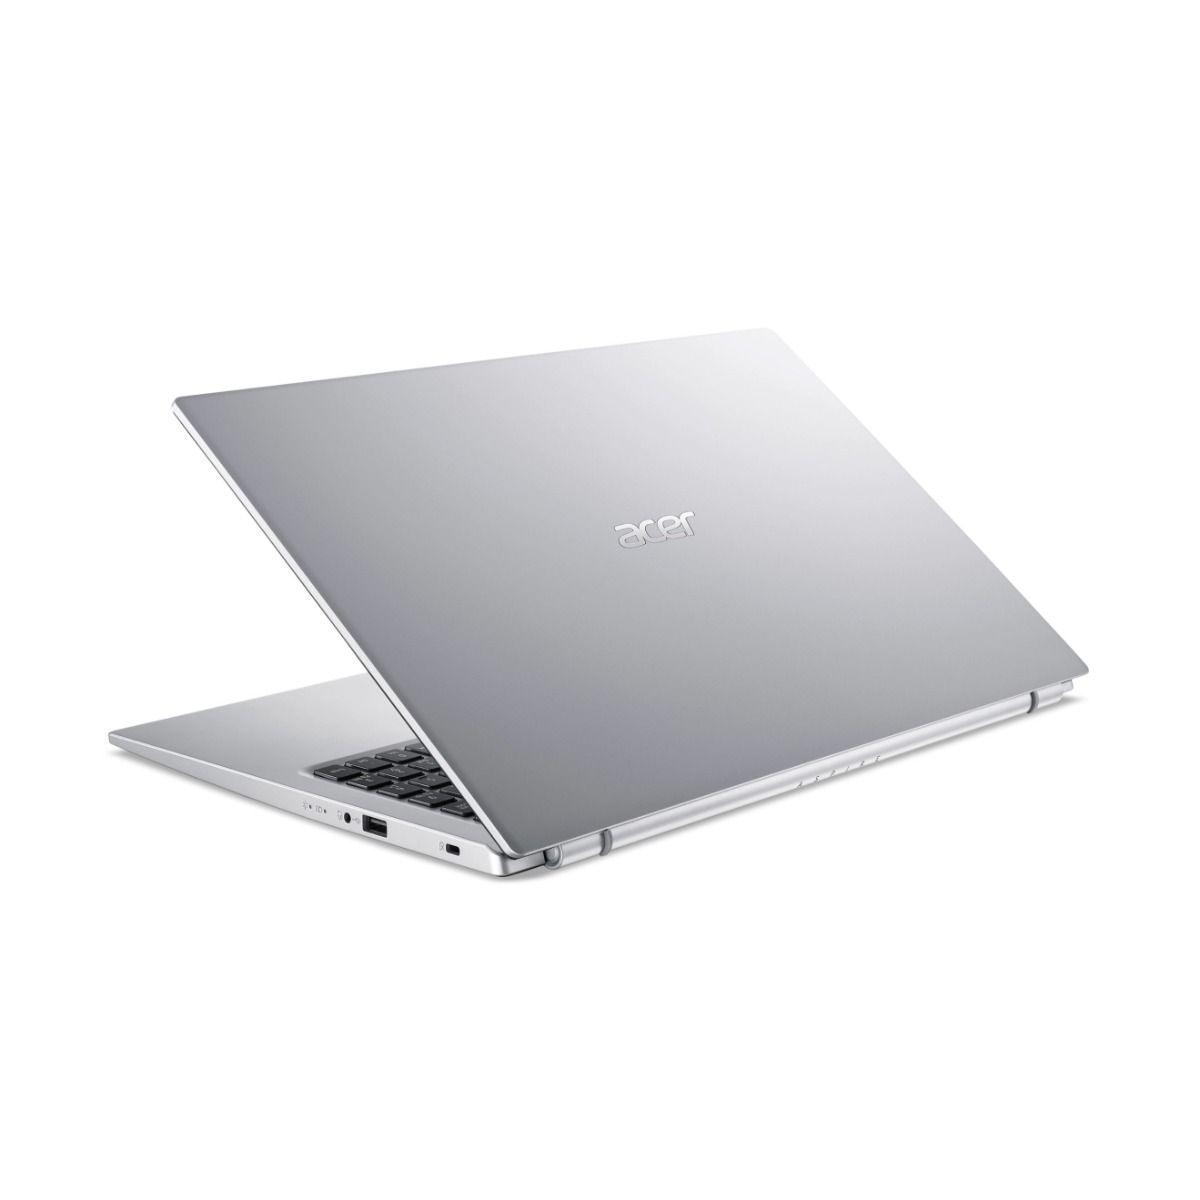 Acer Aspire 3 A315-58-76QQ 15.6" Laptop Intel i7 11th Gen 16GB RAM 512GB SSD Silver